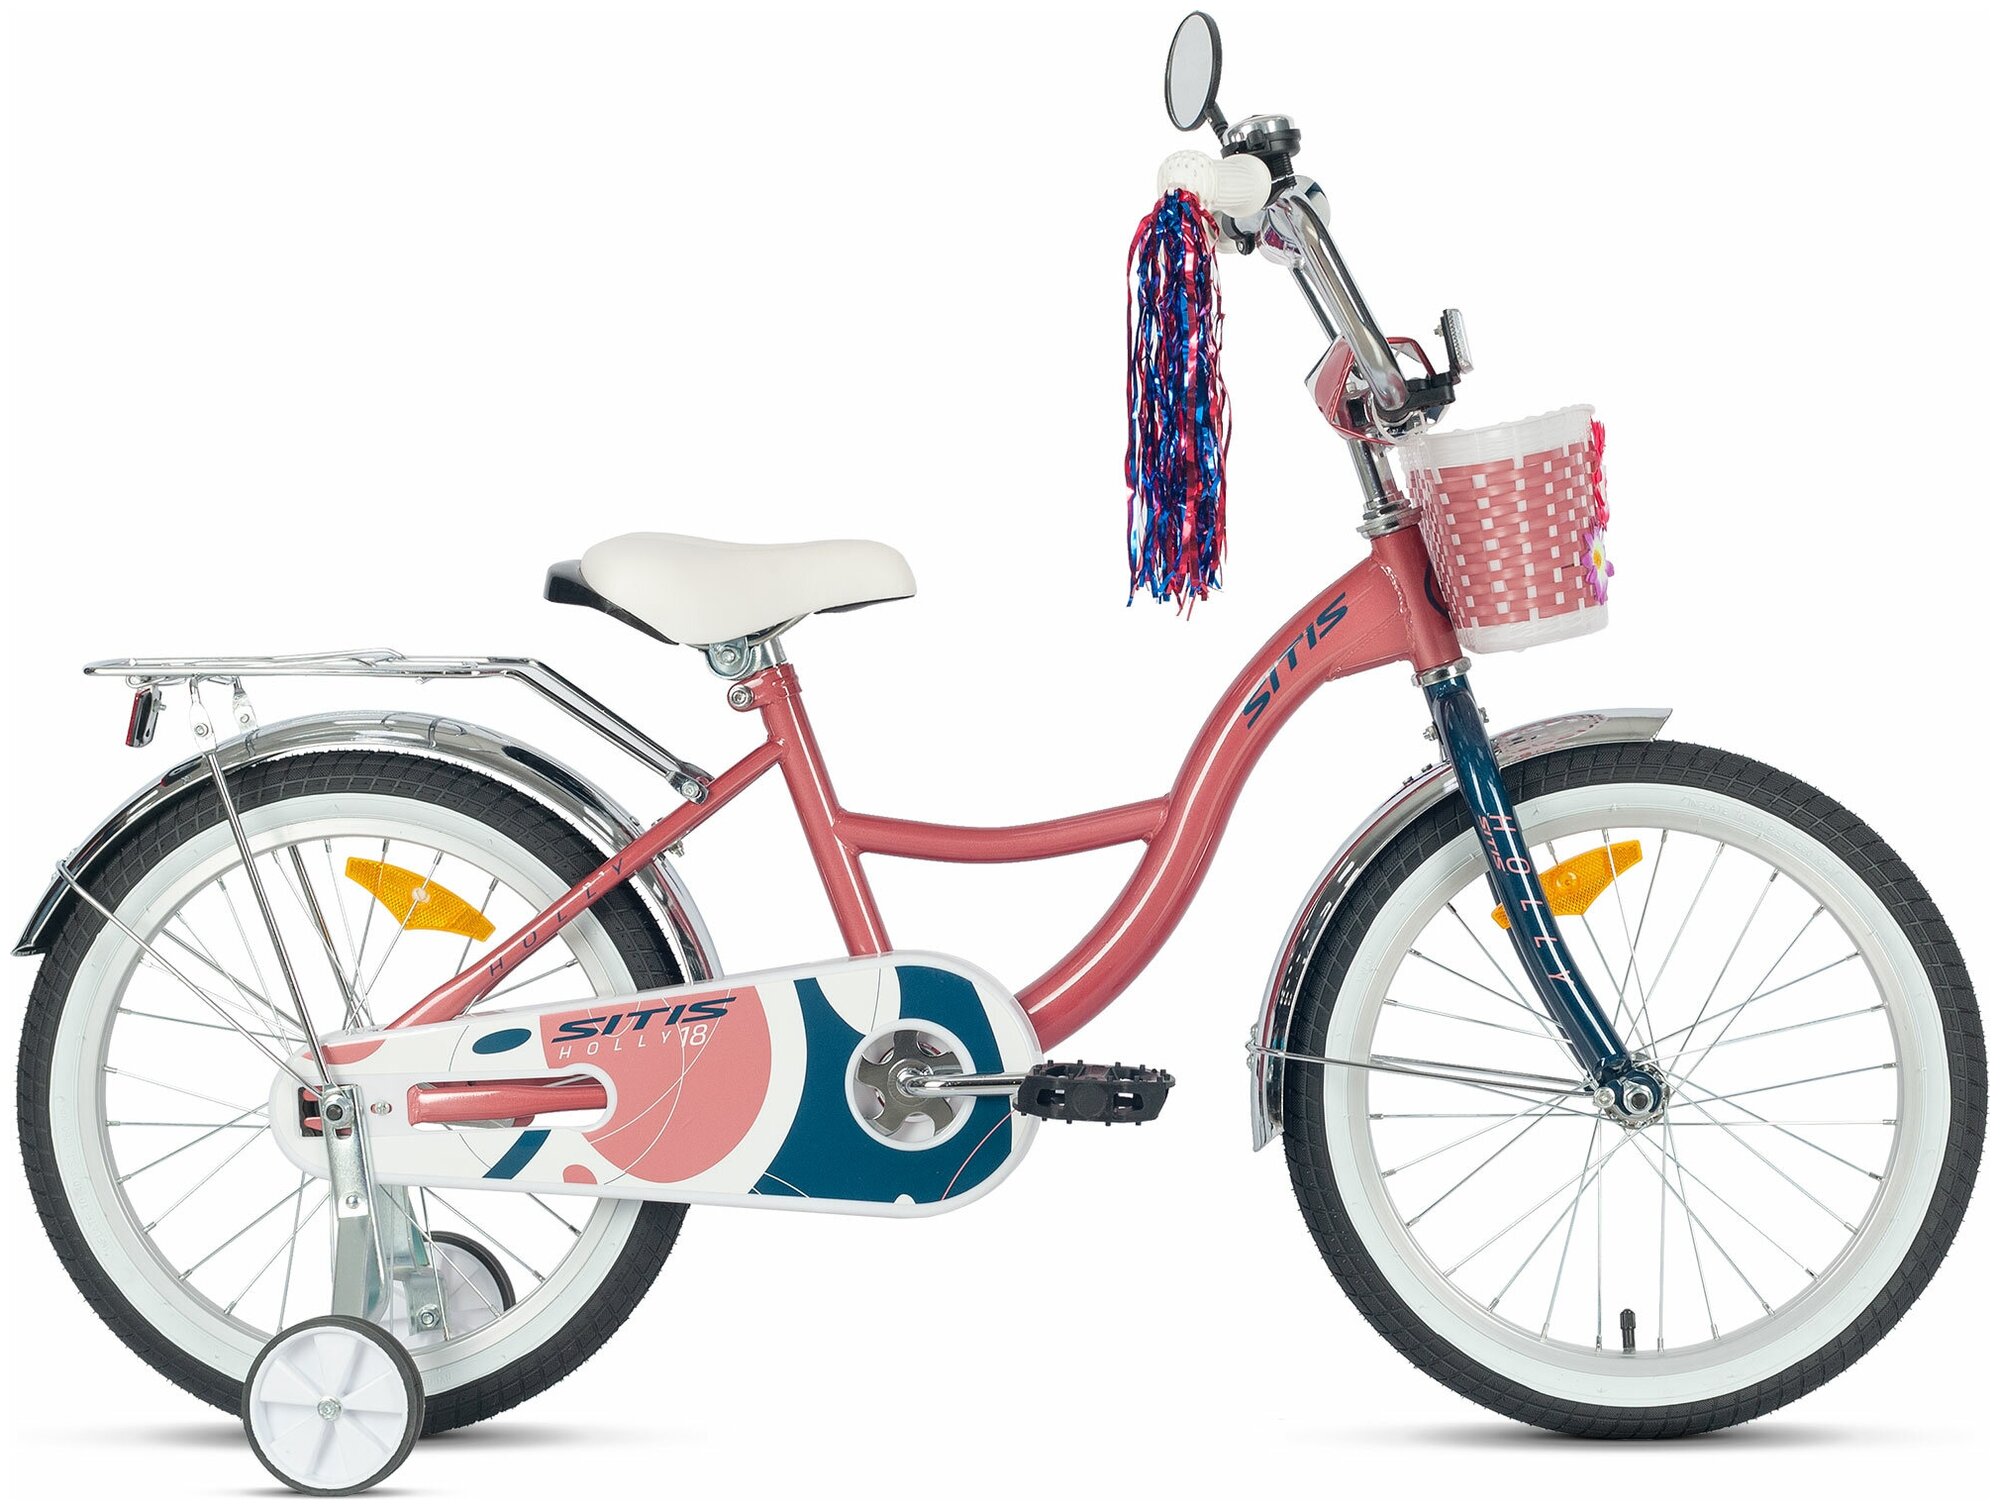 Велосипед детский SITIS HOLLY 18 (2022) для детей от 4 до 6 лет стальная рама с защитой цепи, звонком, корзиной, багажником, крыльями, 1 скорость, ножной тормоз, розовый цвет для роста 115-130